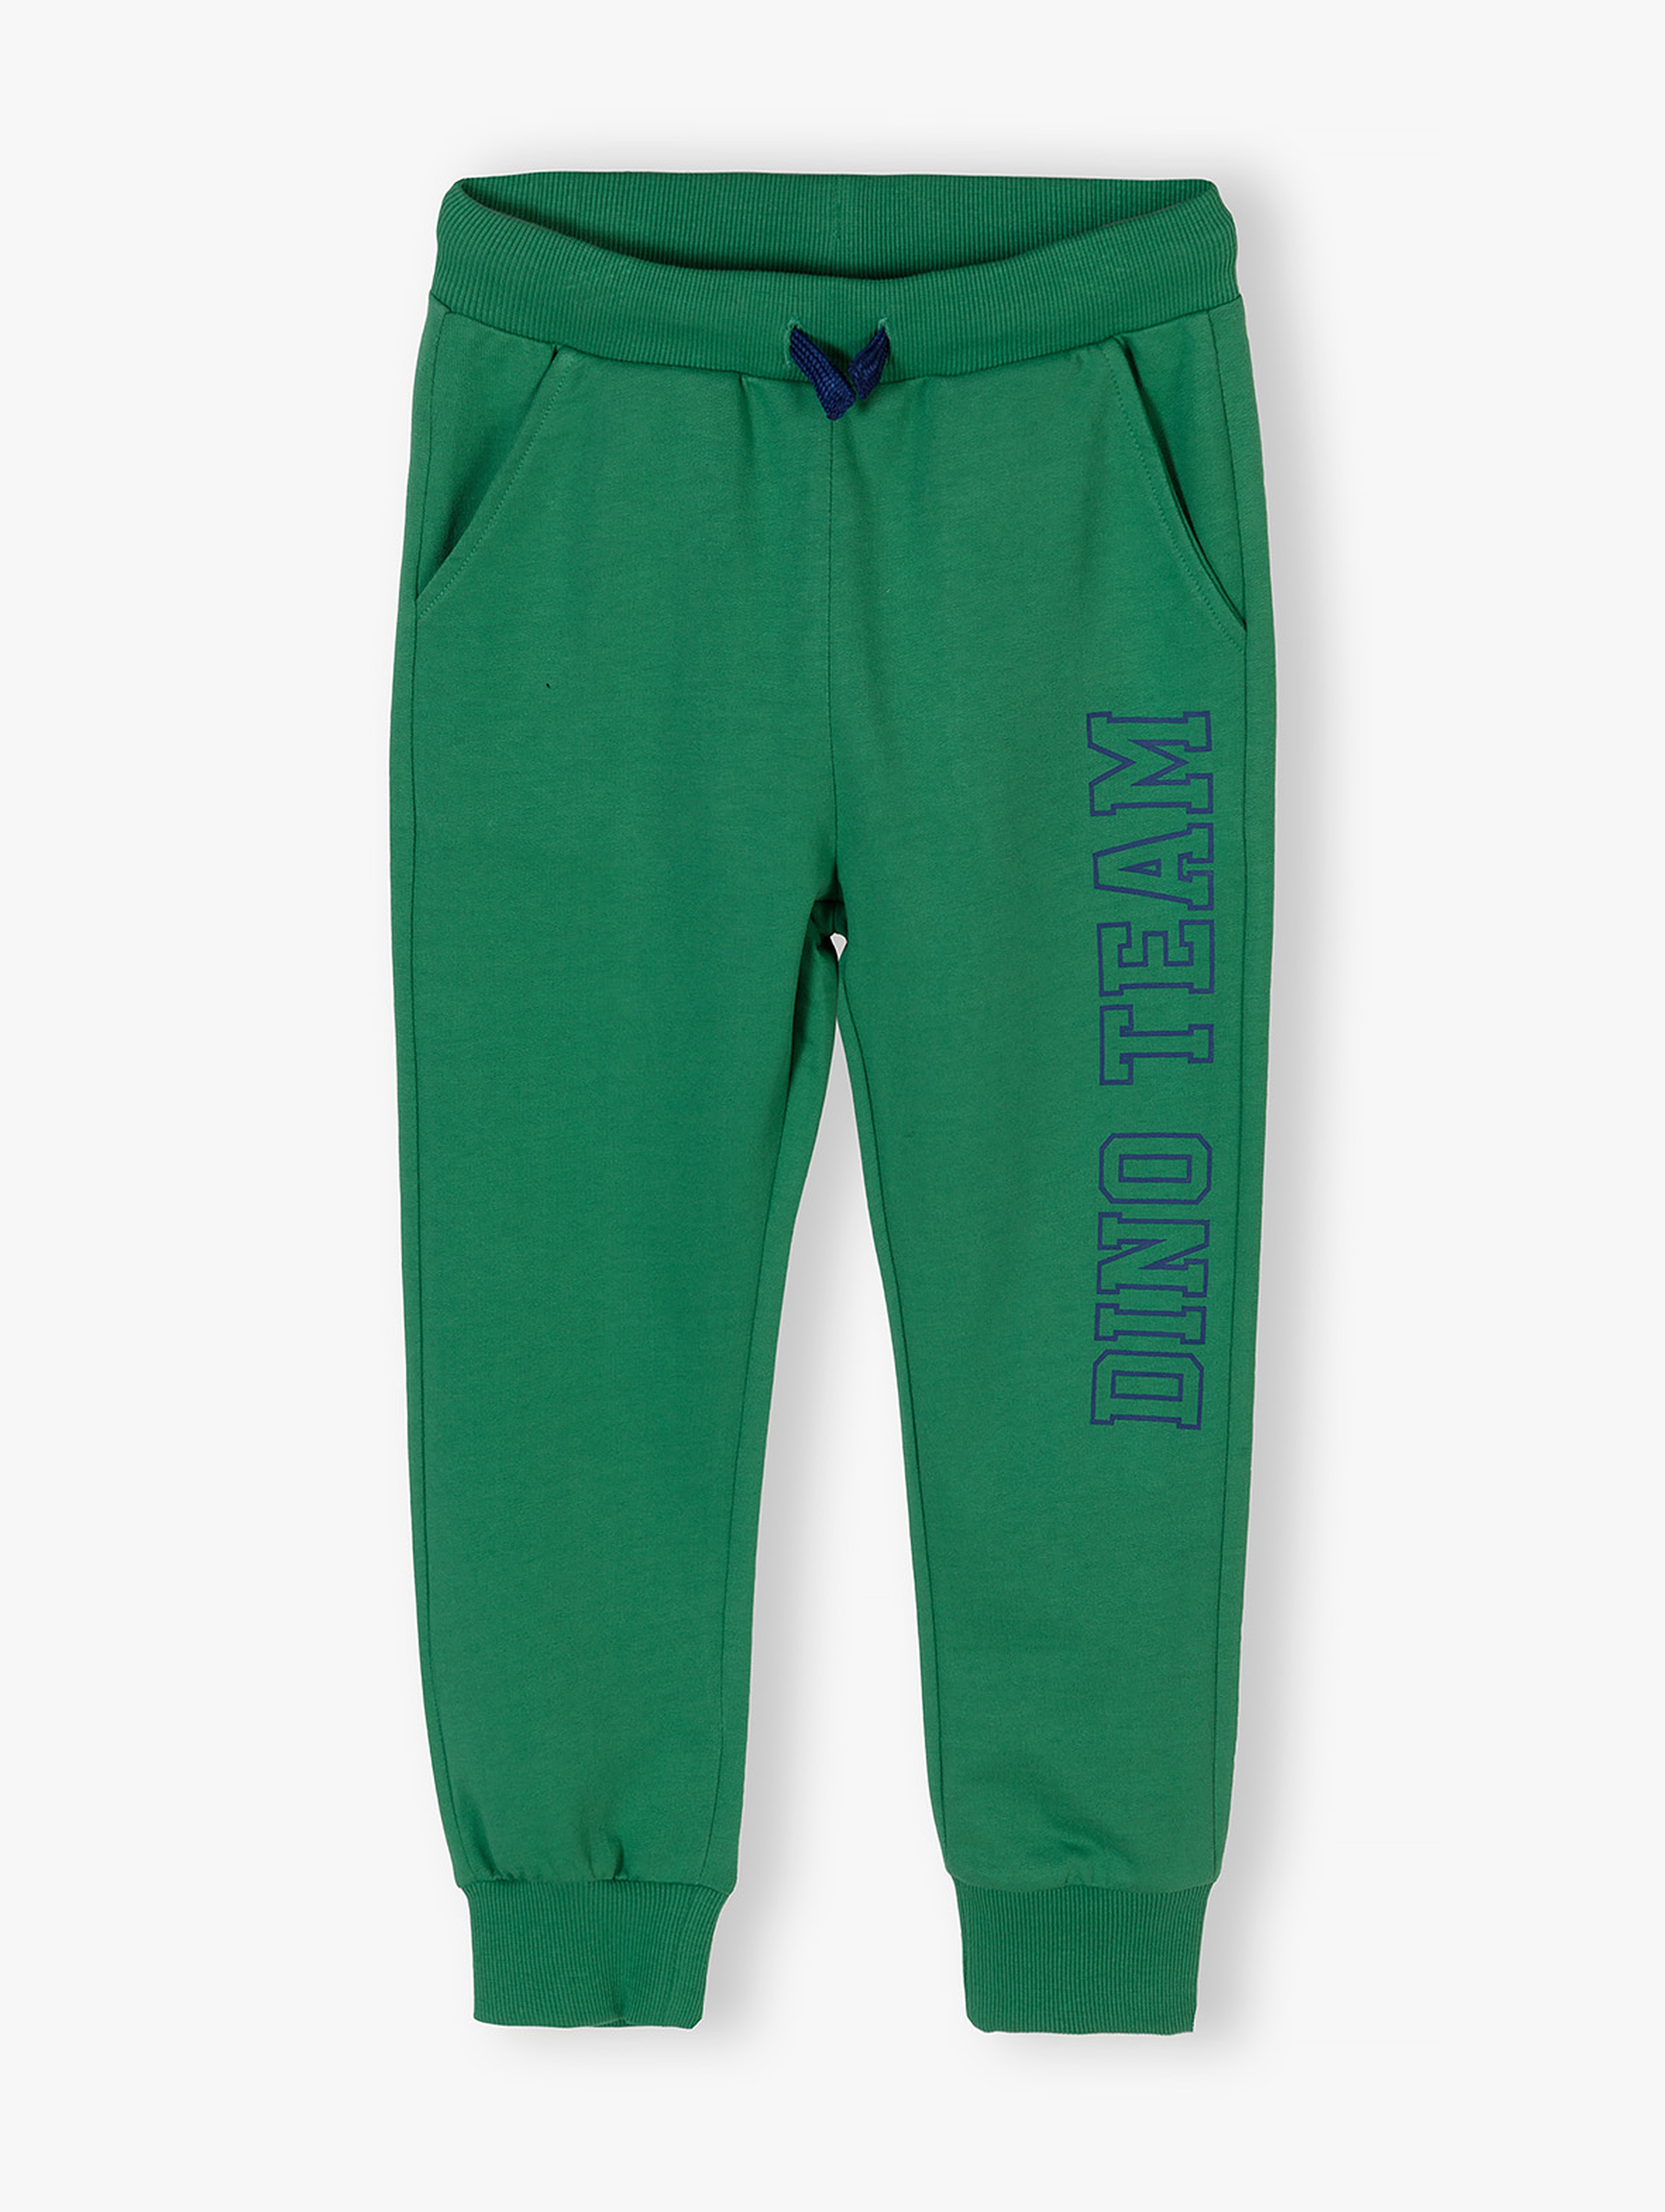 Zielone spodnie dresowe regular fit chłopięce - Dino Team